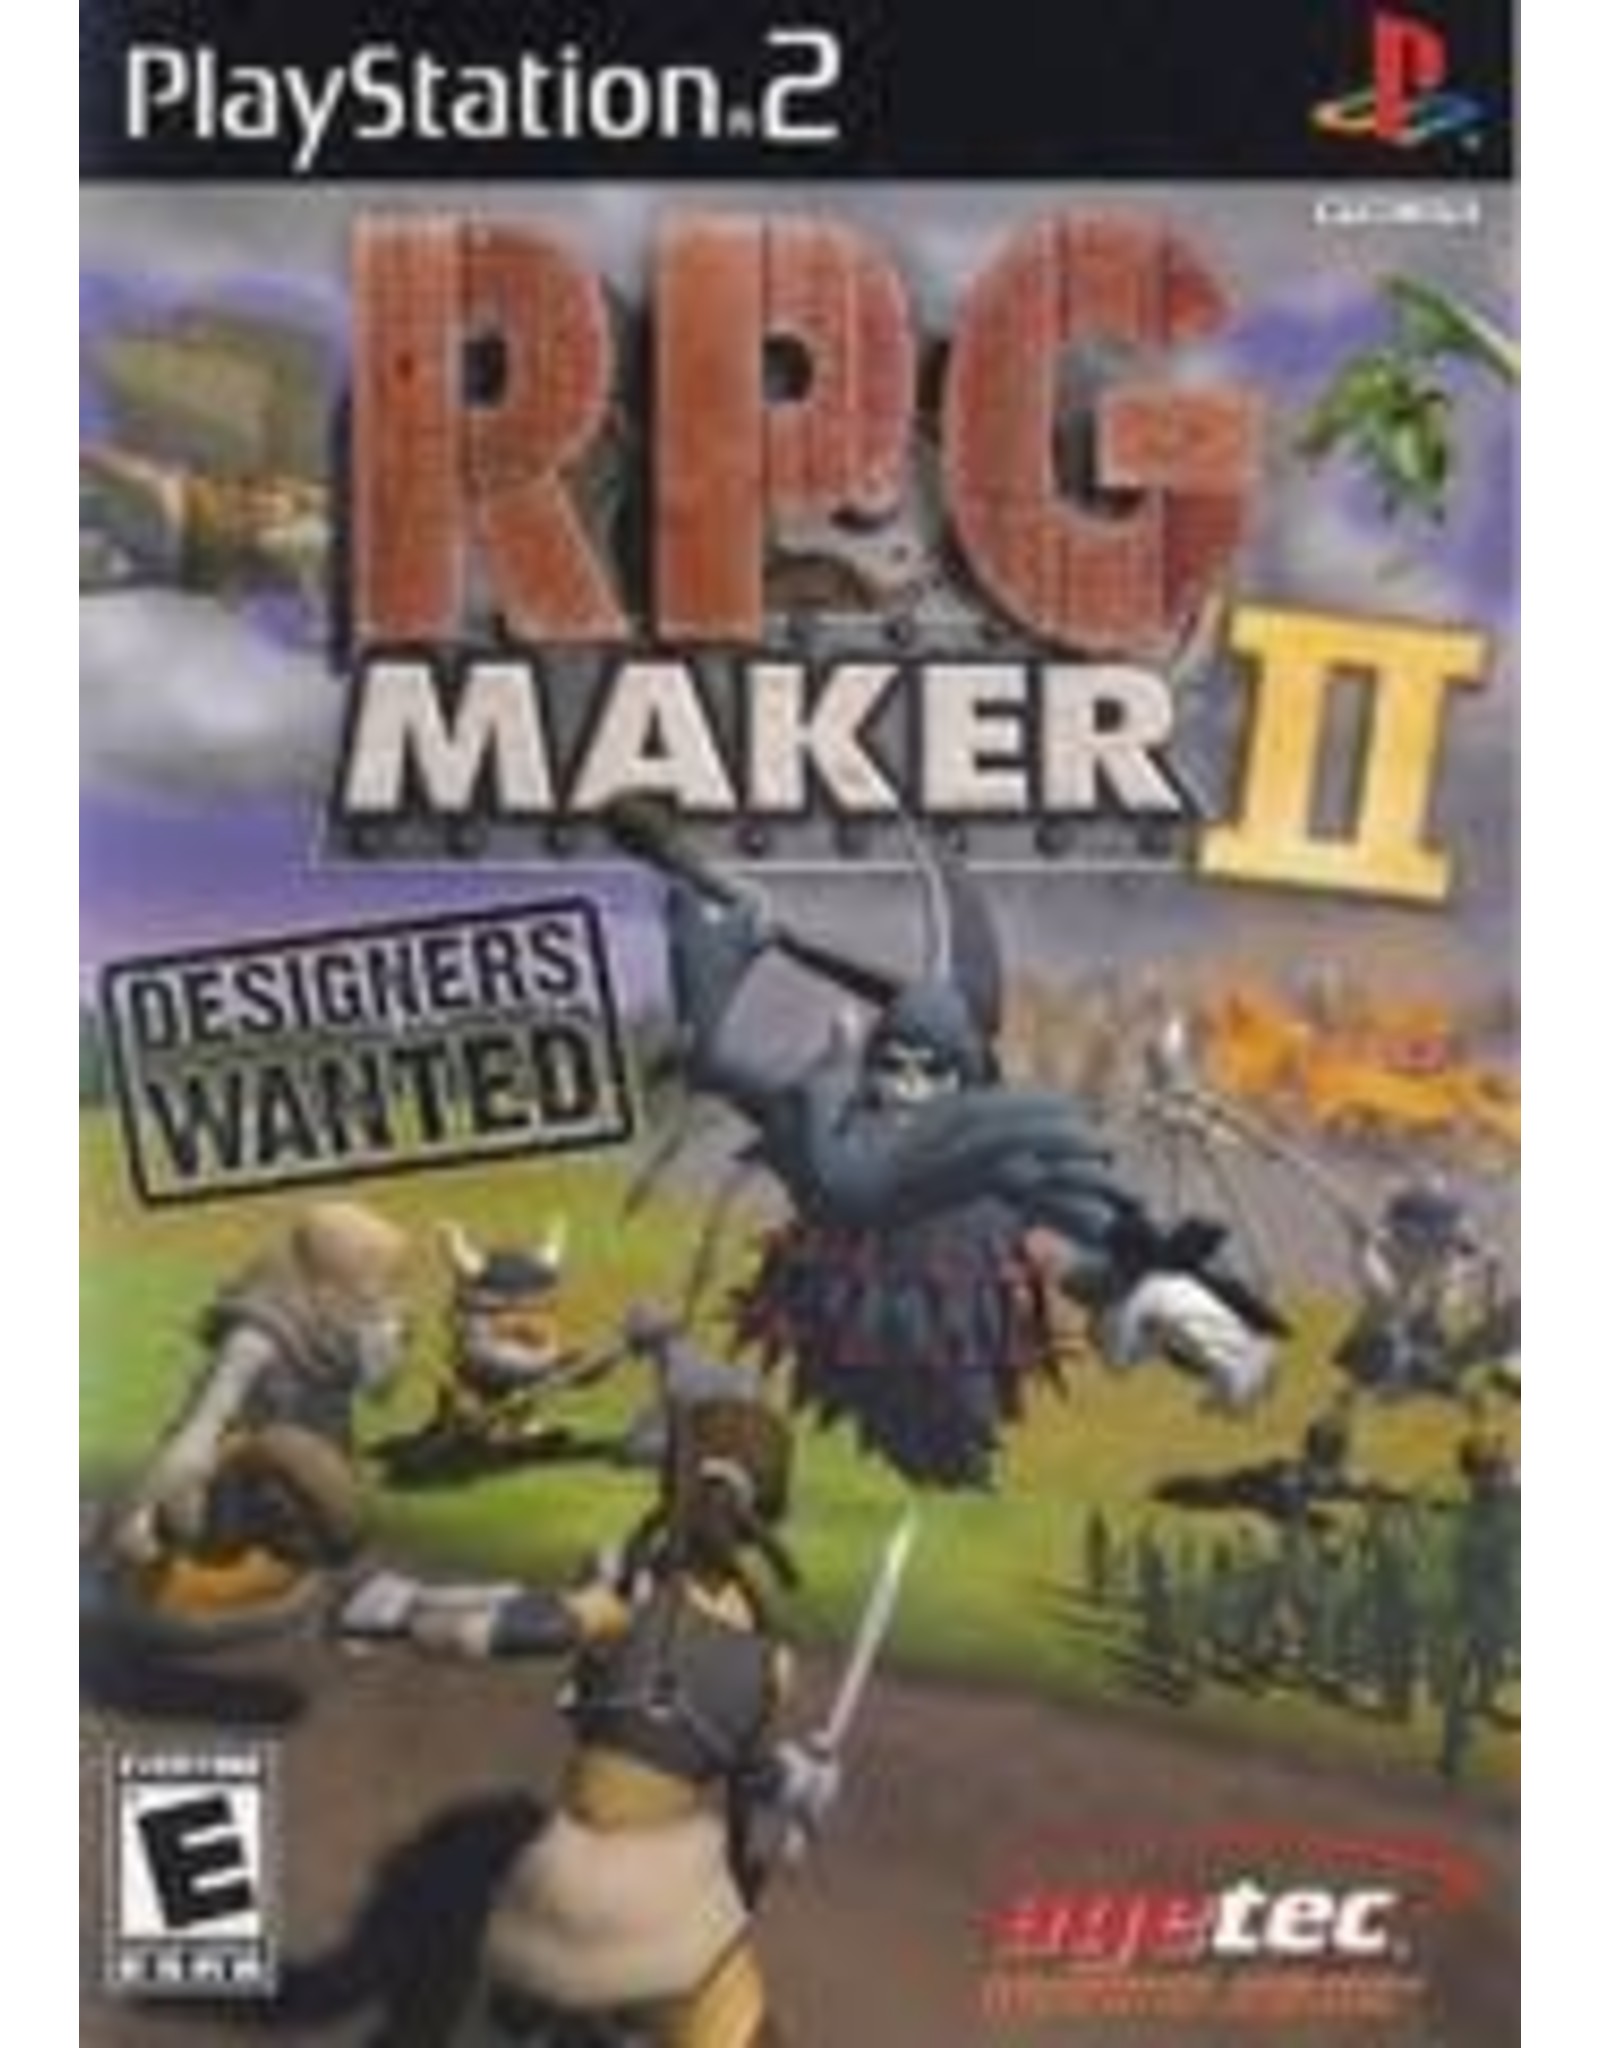 Playstation 2 RPG Maker 2 (CiB)